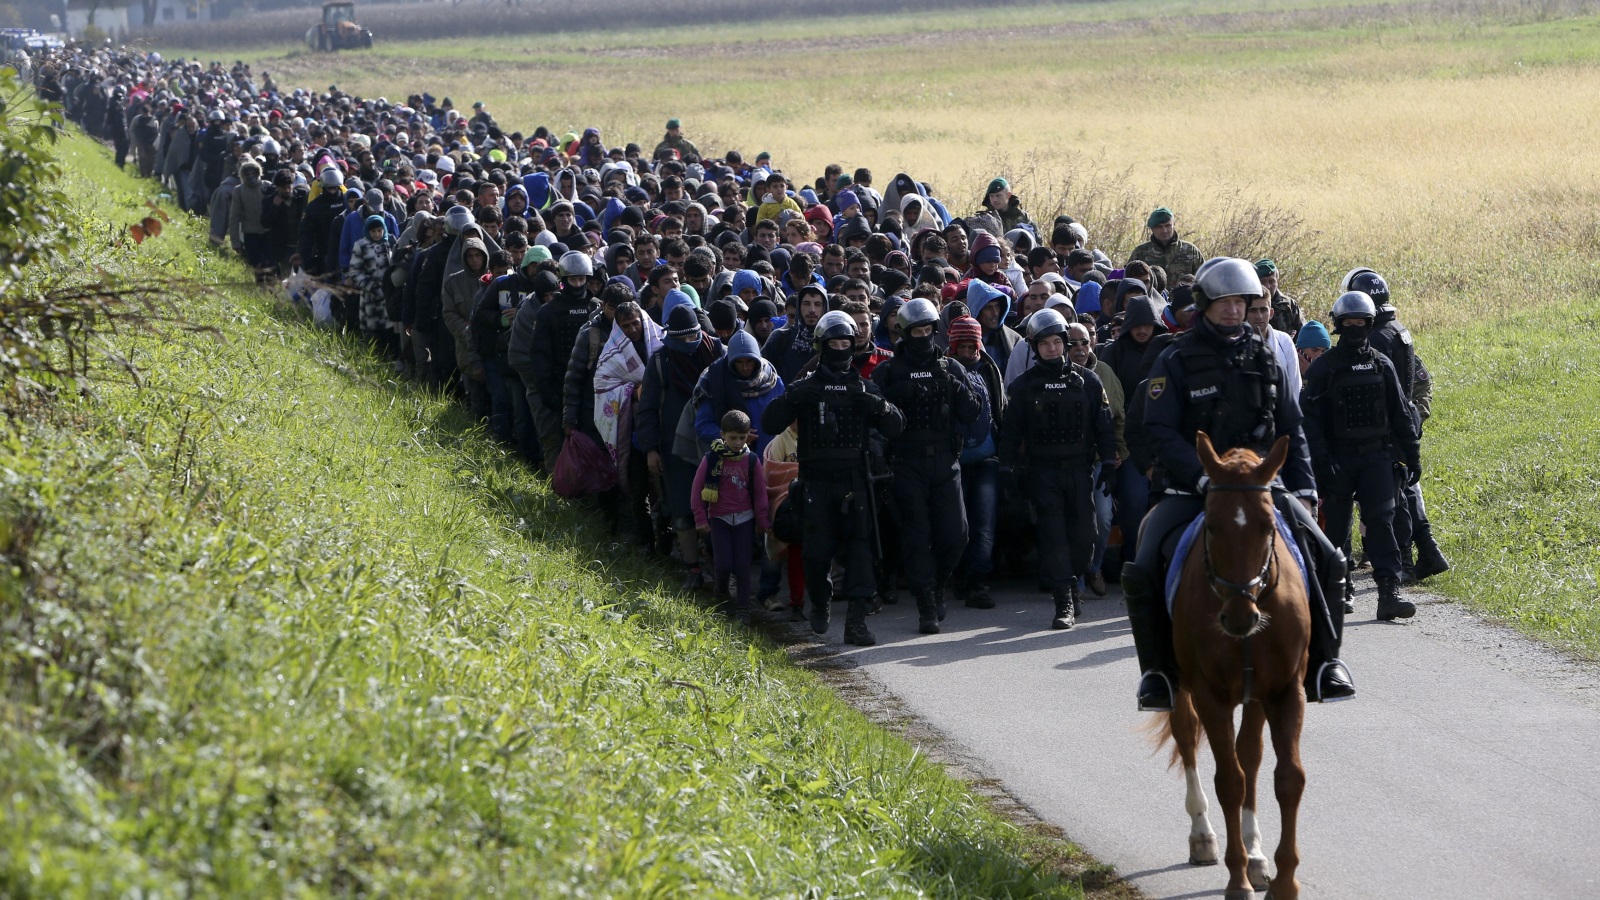 مجموعة من اللاجئين إلى أوروبا عام 2015  (رويترز)